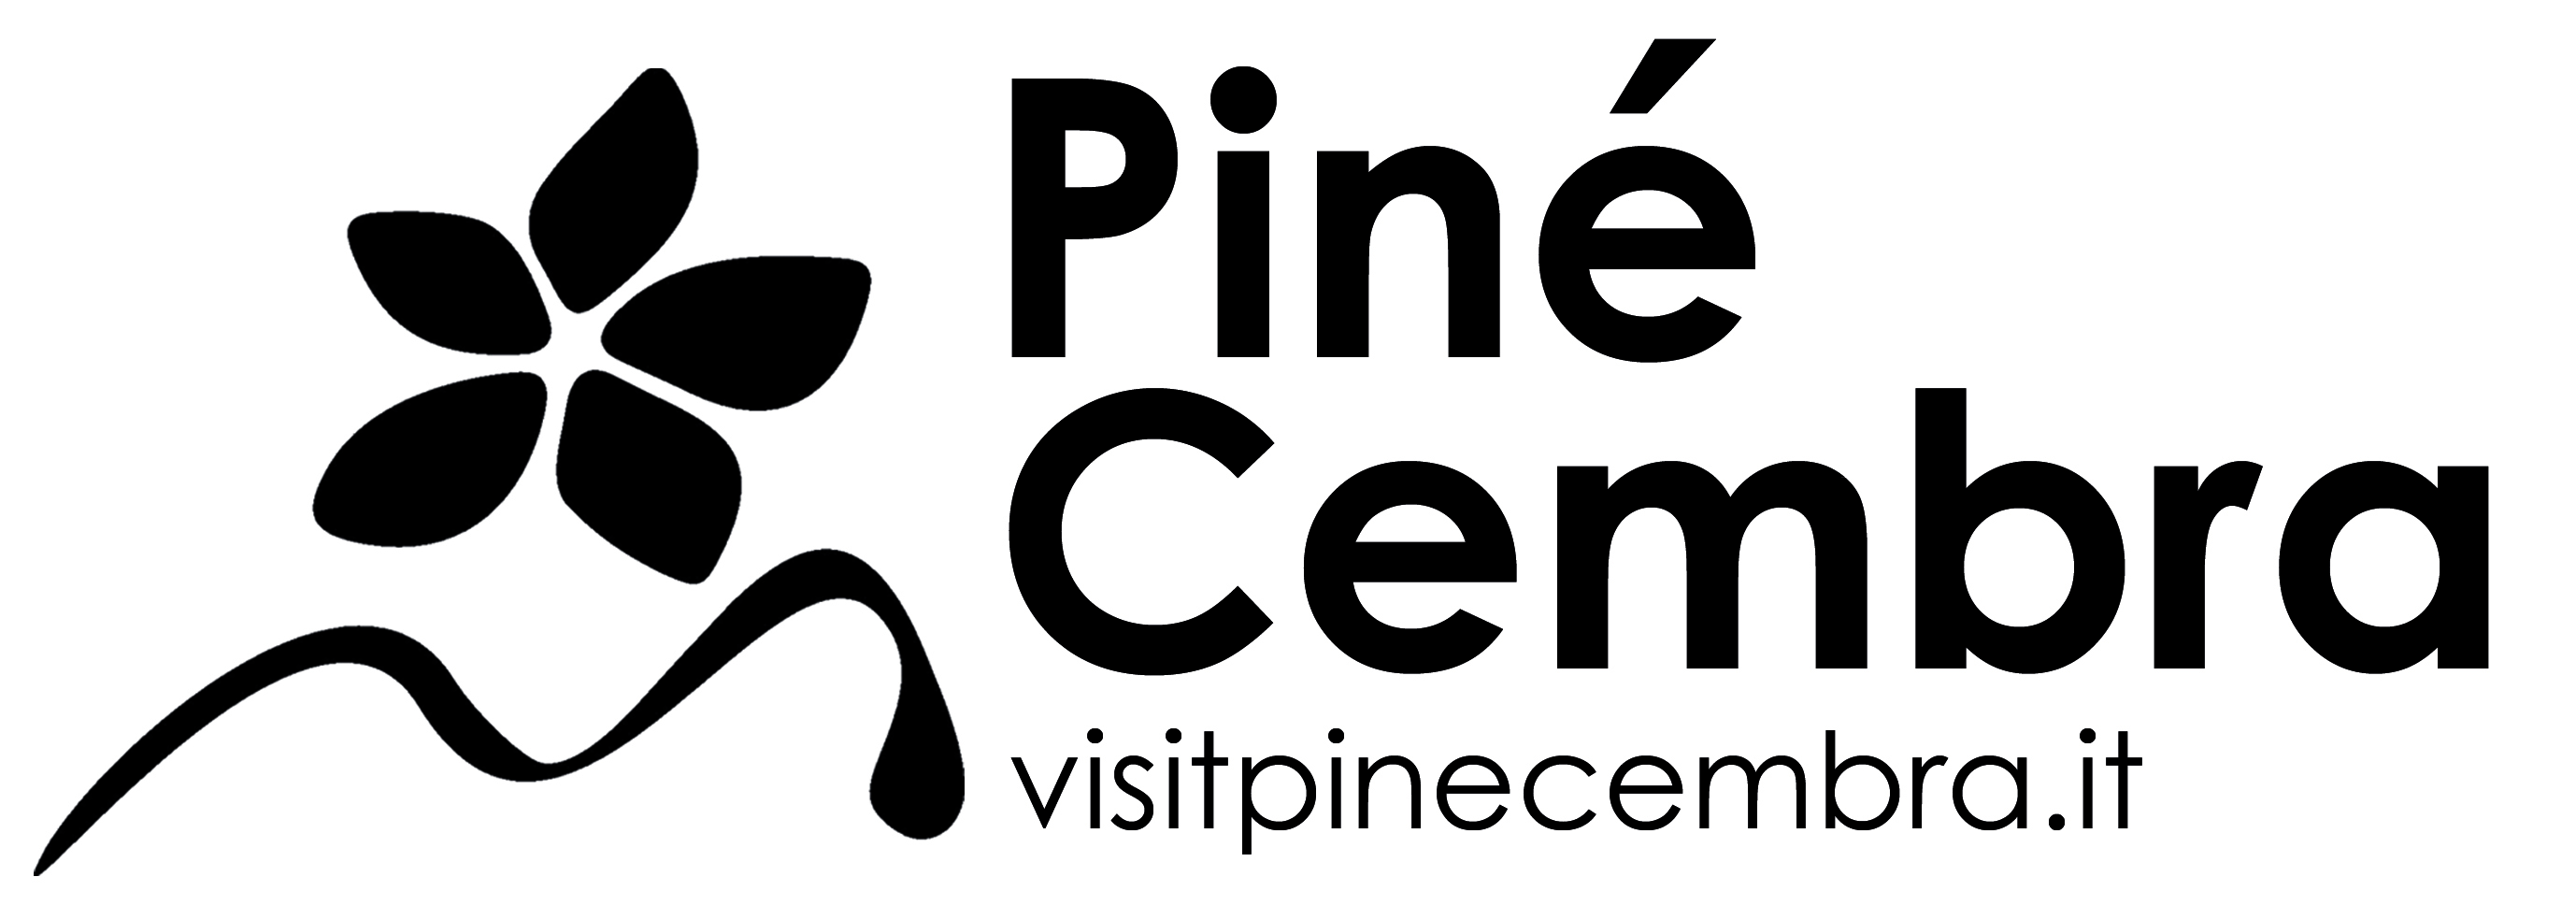 ApT Piné Cembra logo 2017 NERO